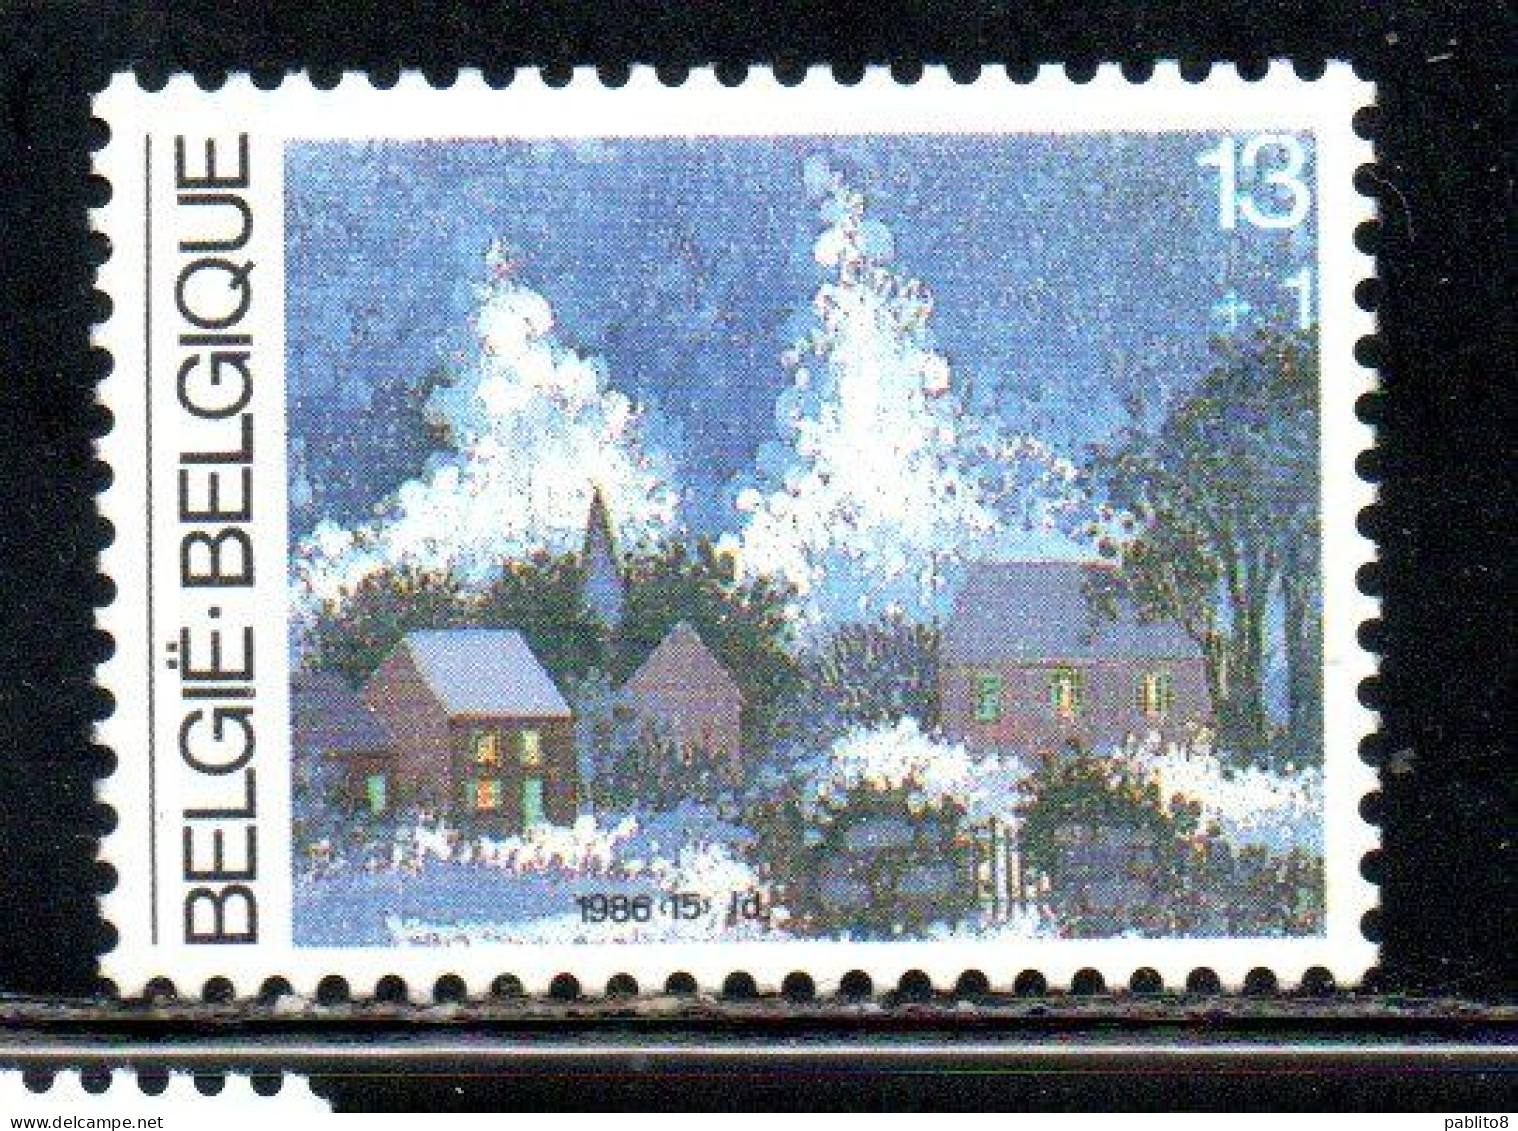 BELGIQUE BELGIE BELGIO BELGIUM 1986 CHRISTMAS NOEL NATALE WEIHNACHTEN NAVIDAD 13 + 1fr MNH - Nuovi